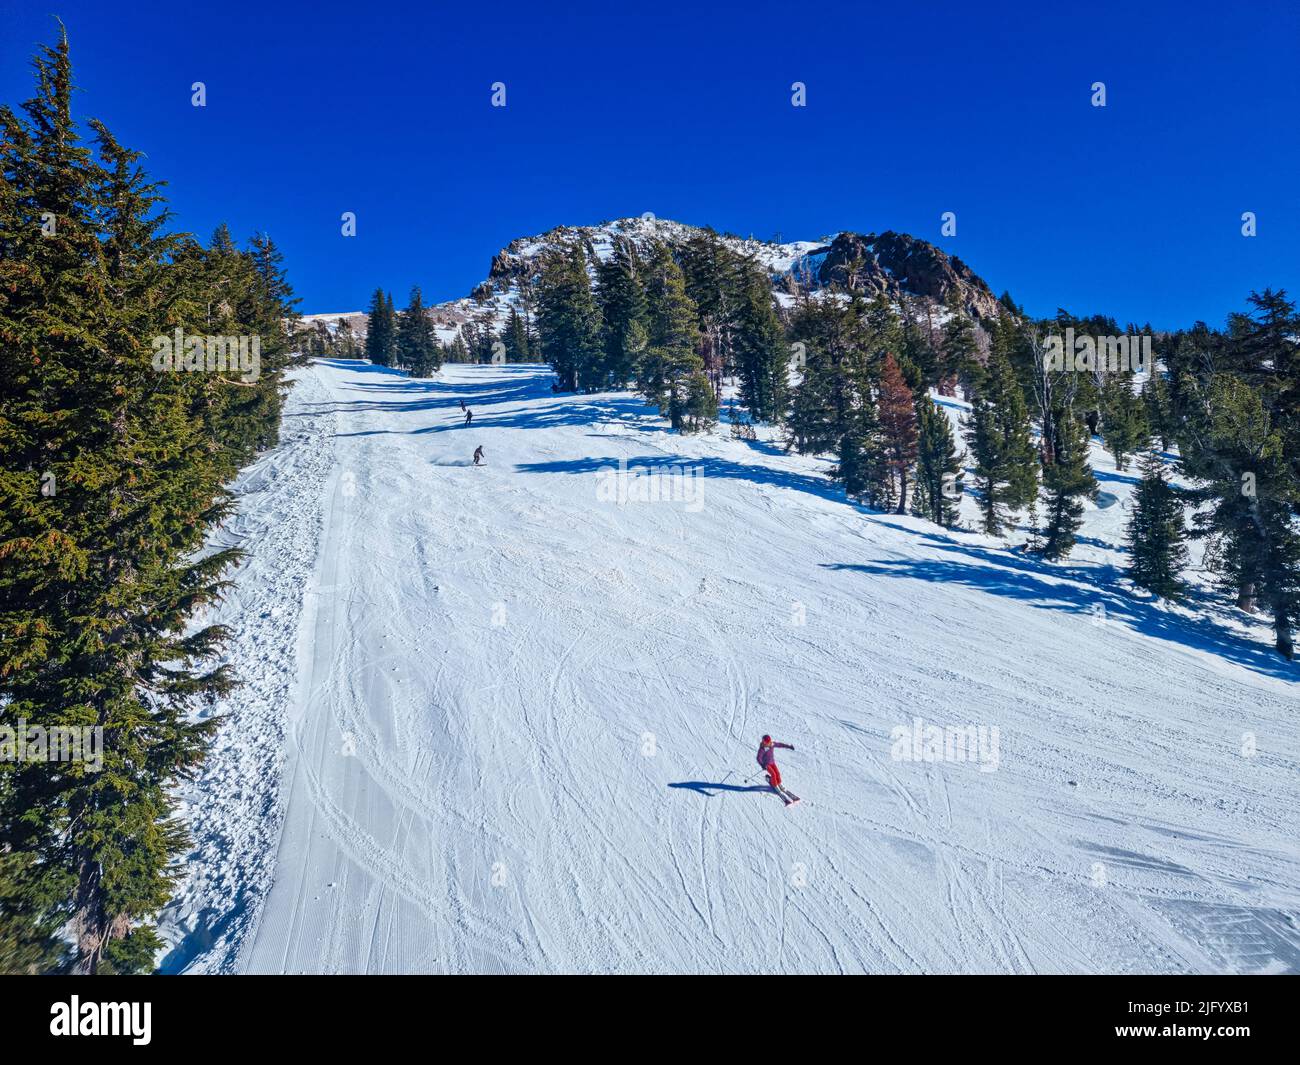 Ski-ing, Mammoth Mountain, Californie, États-Unis d'Amérique, Amérique du Nord Banque D'Images